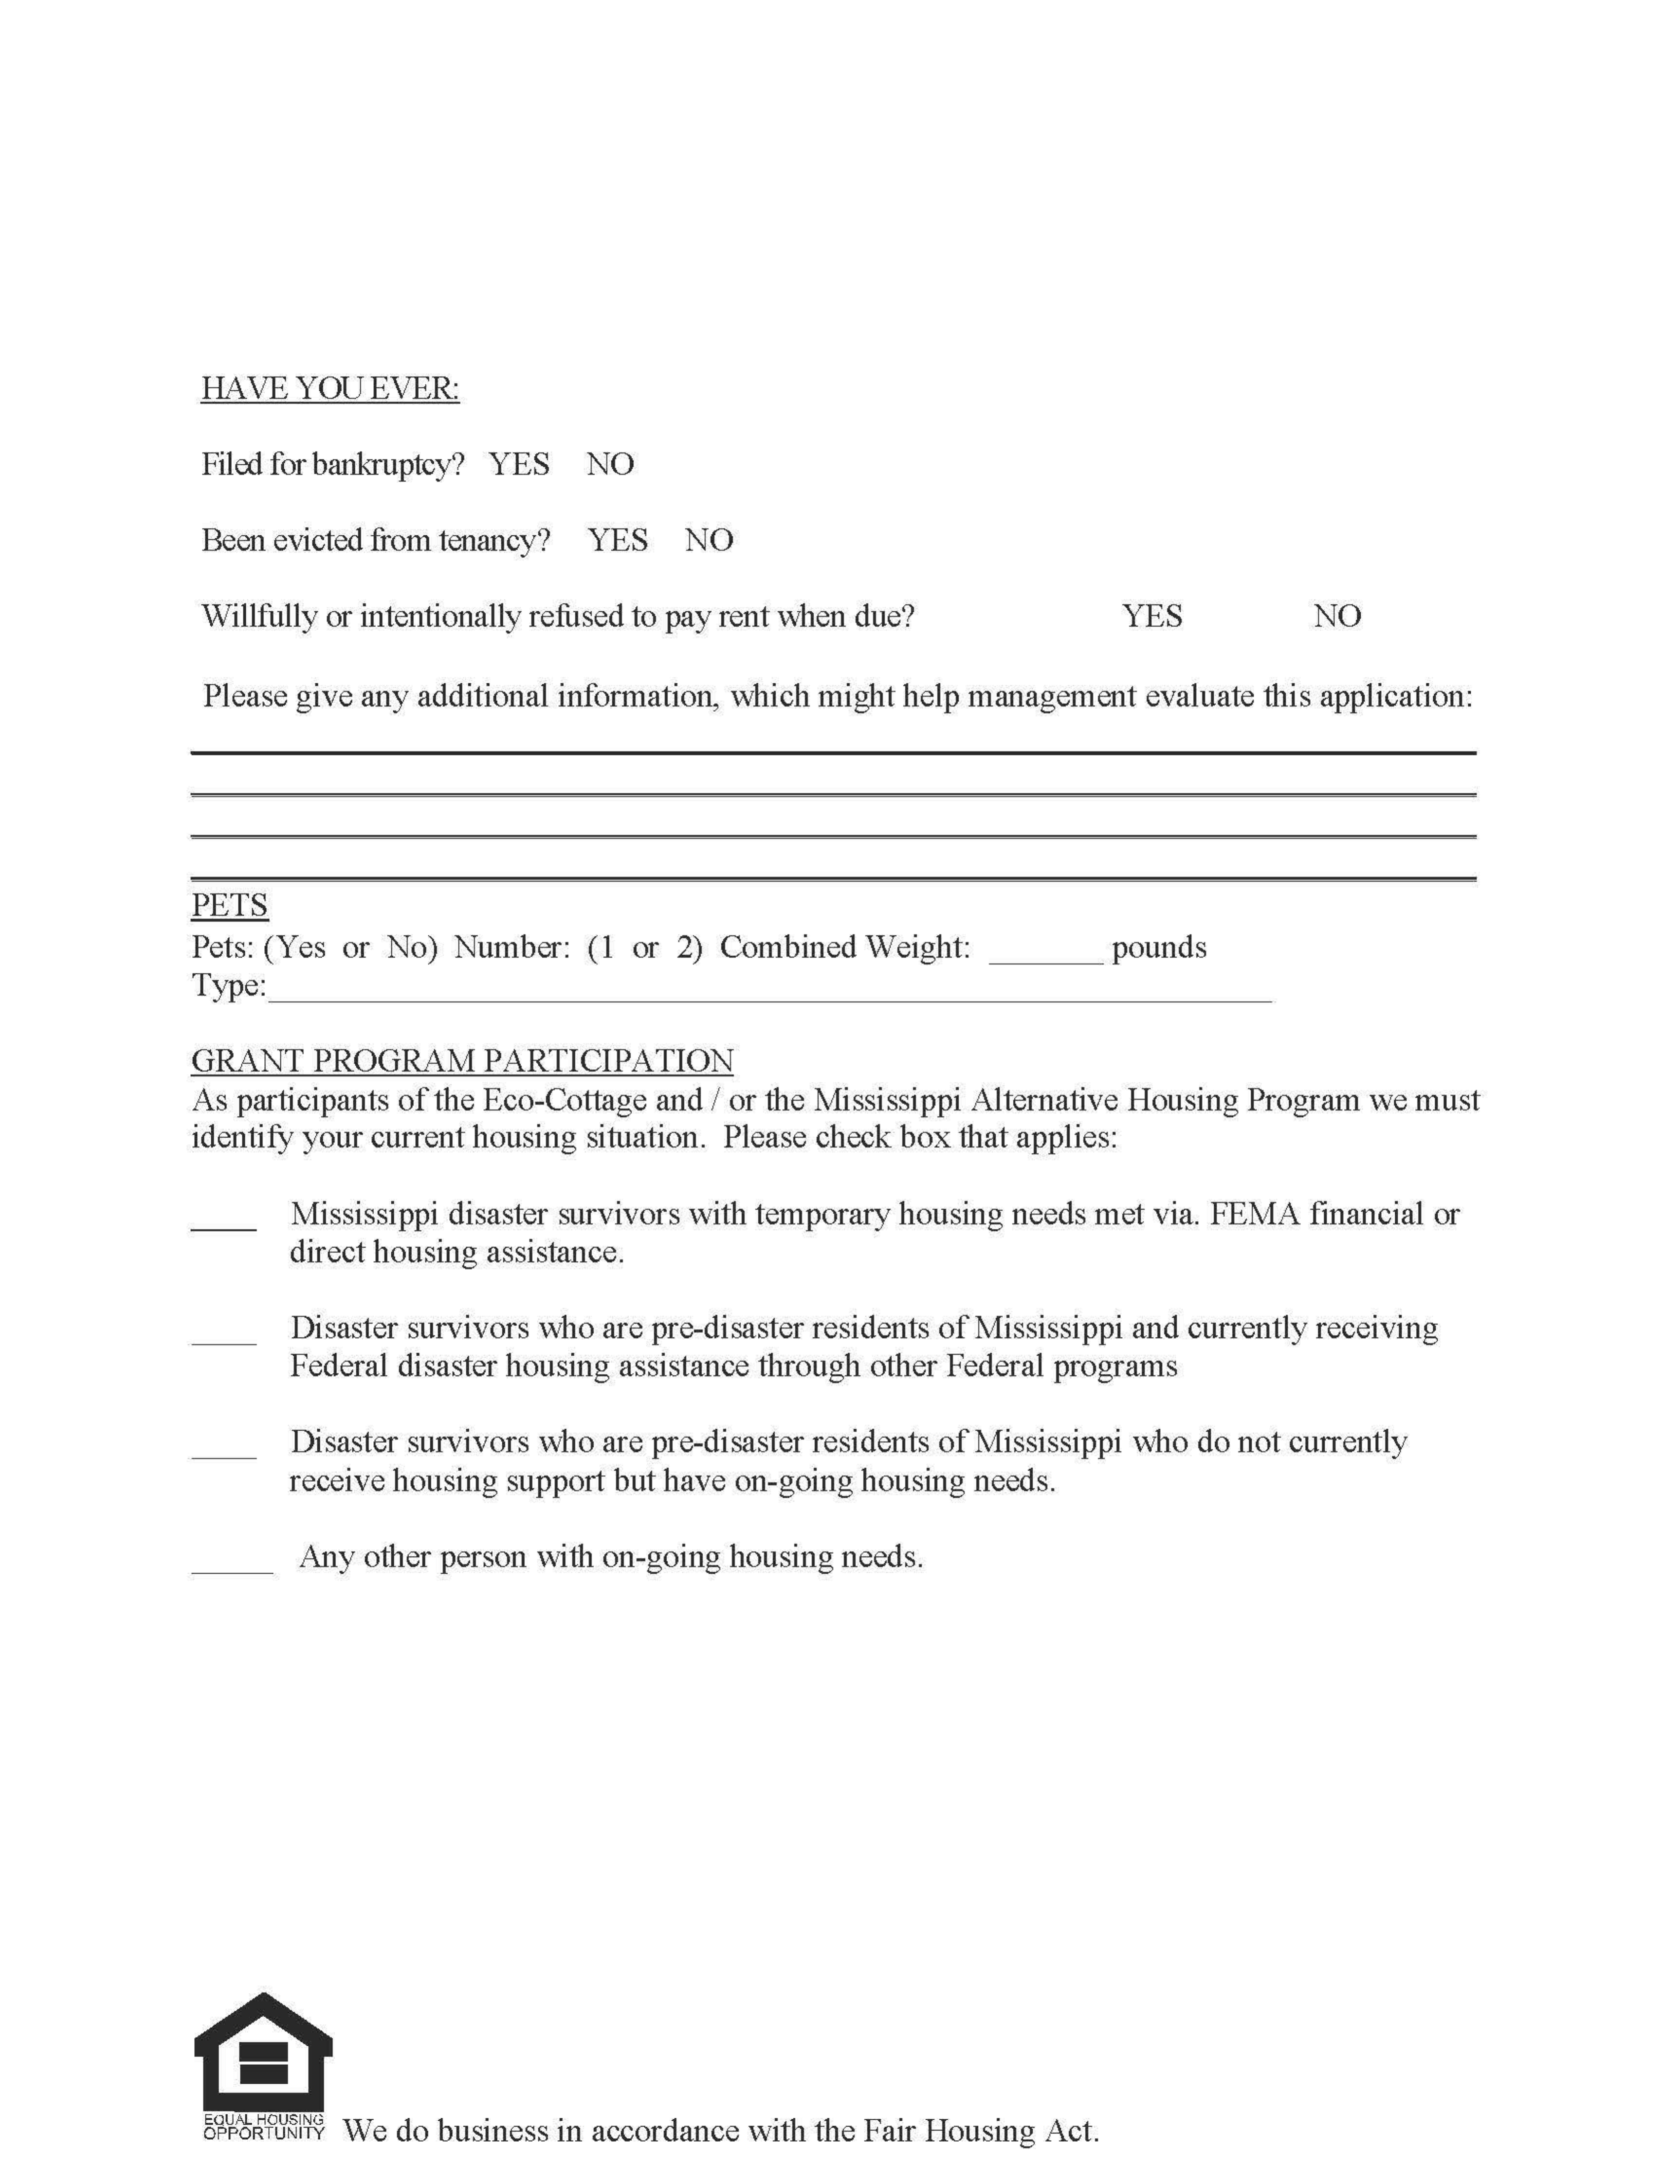 Mississippi Rental Application Form